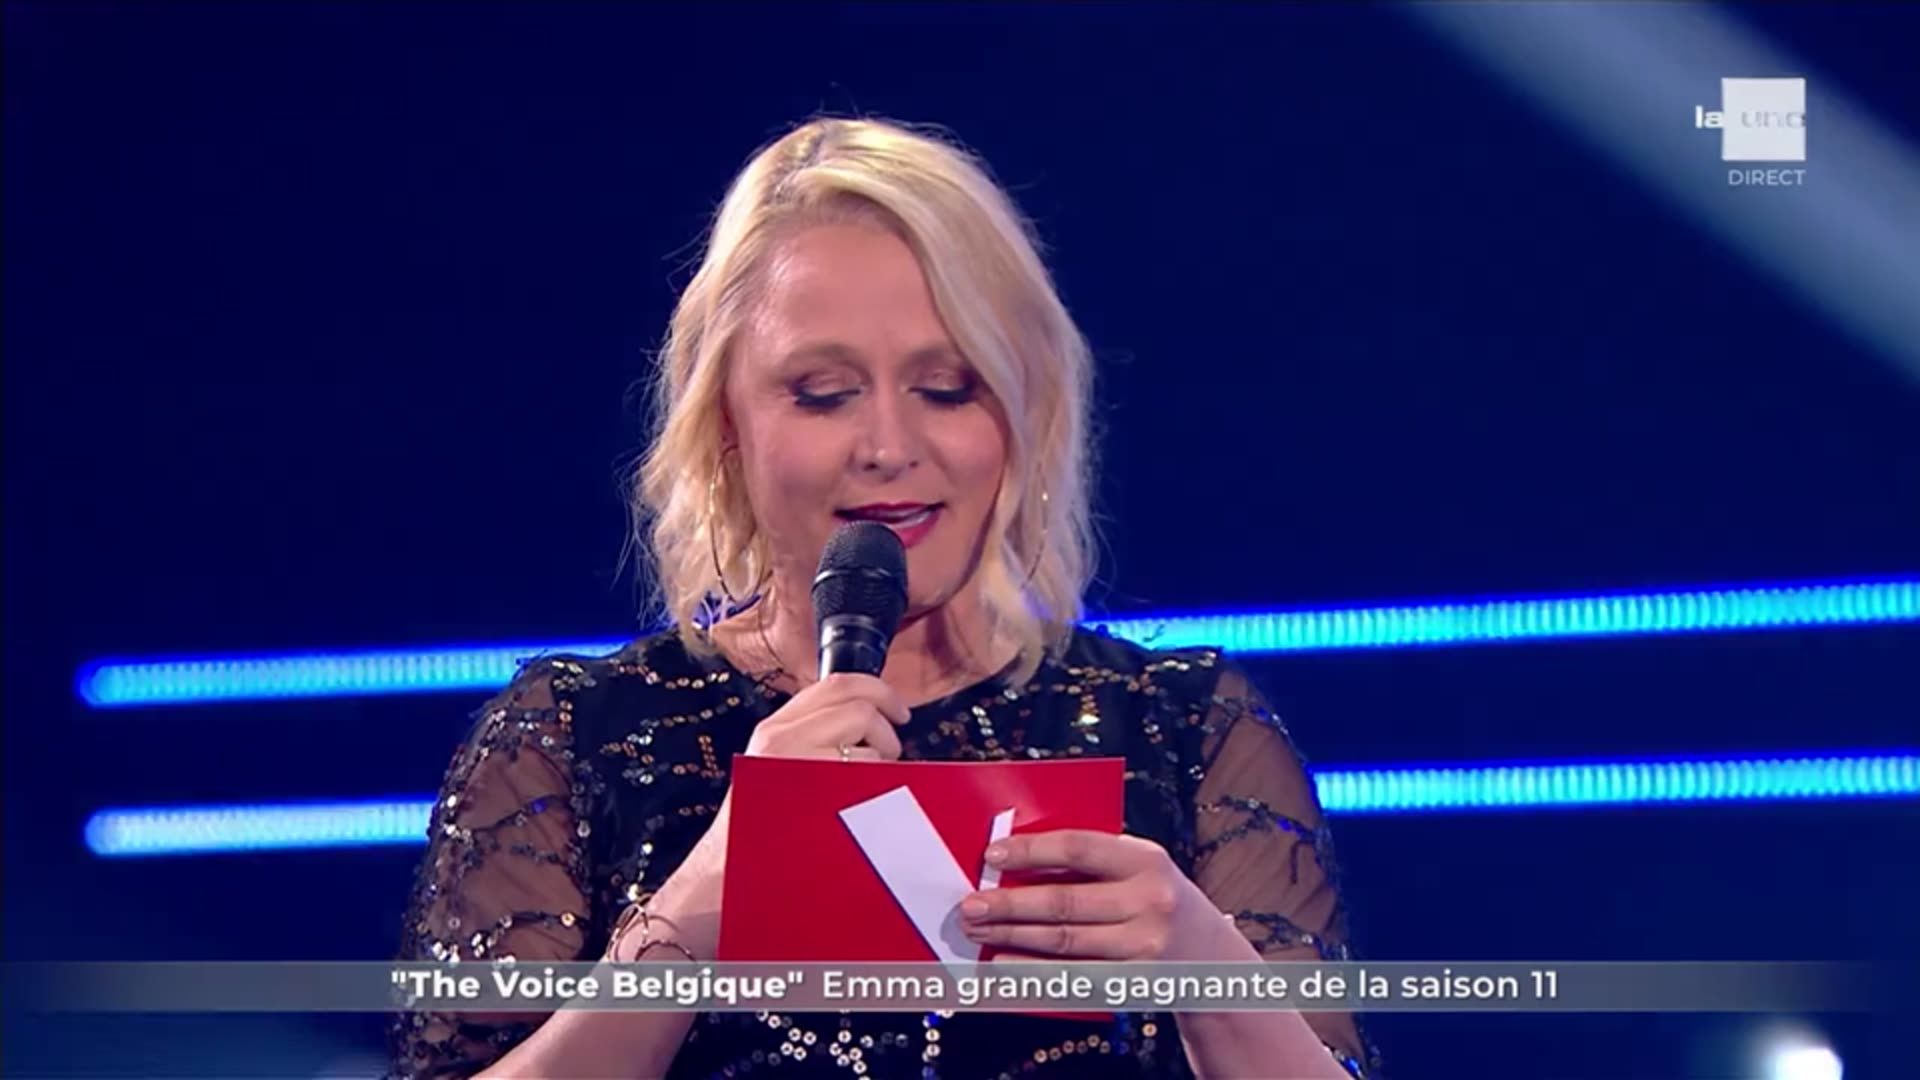 The Voice Belgique : Emma grande gagnante de la saison 11